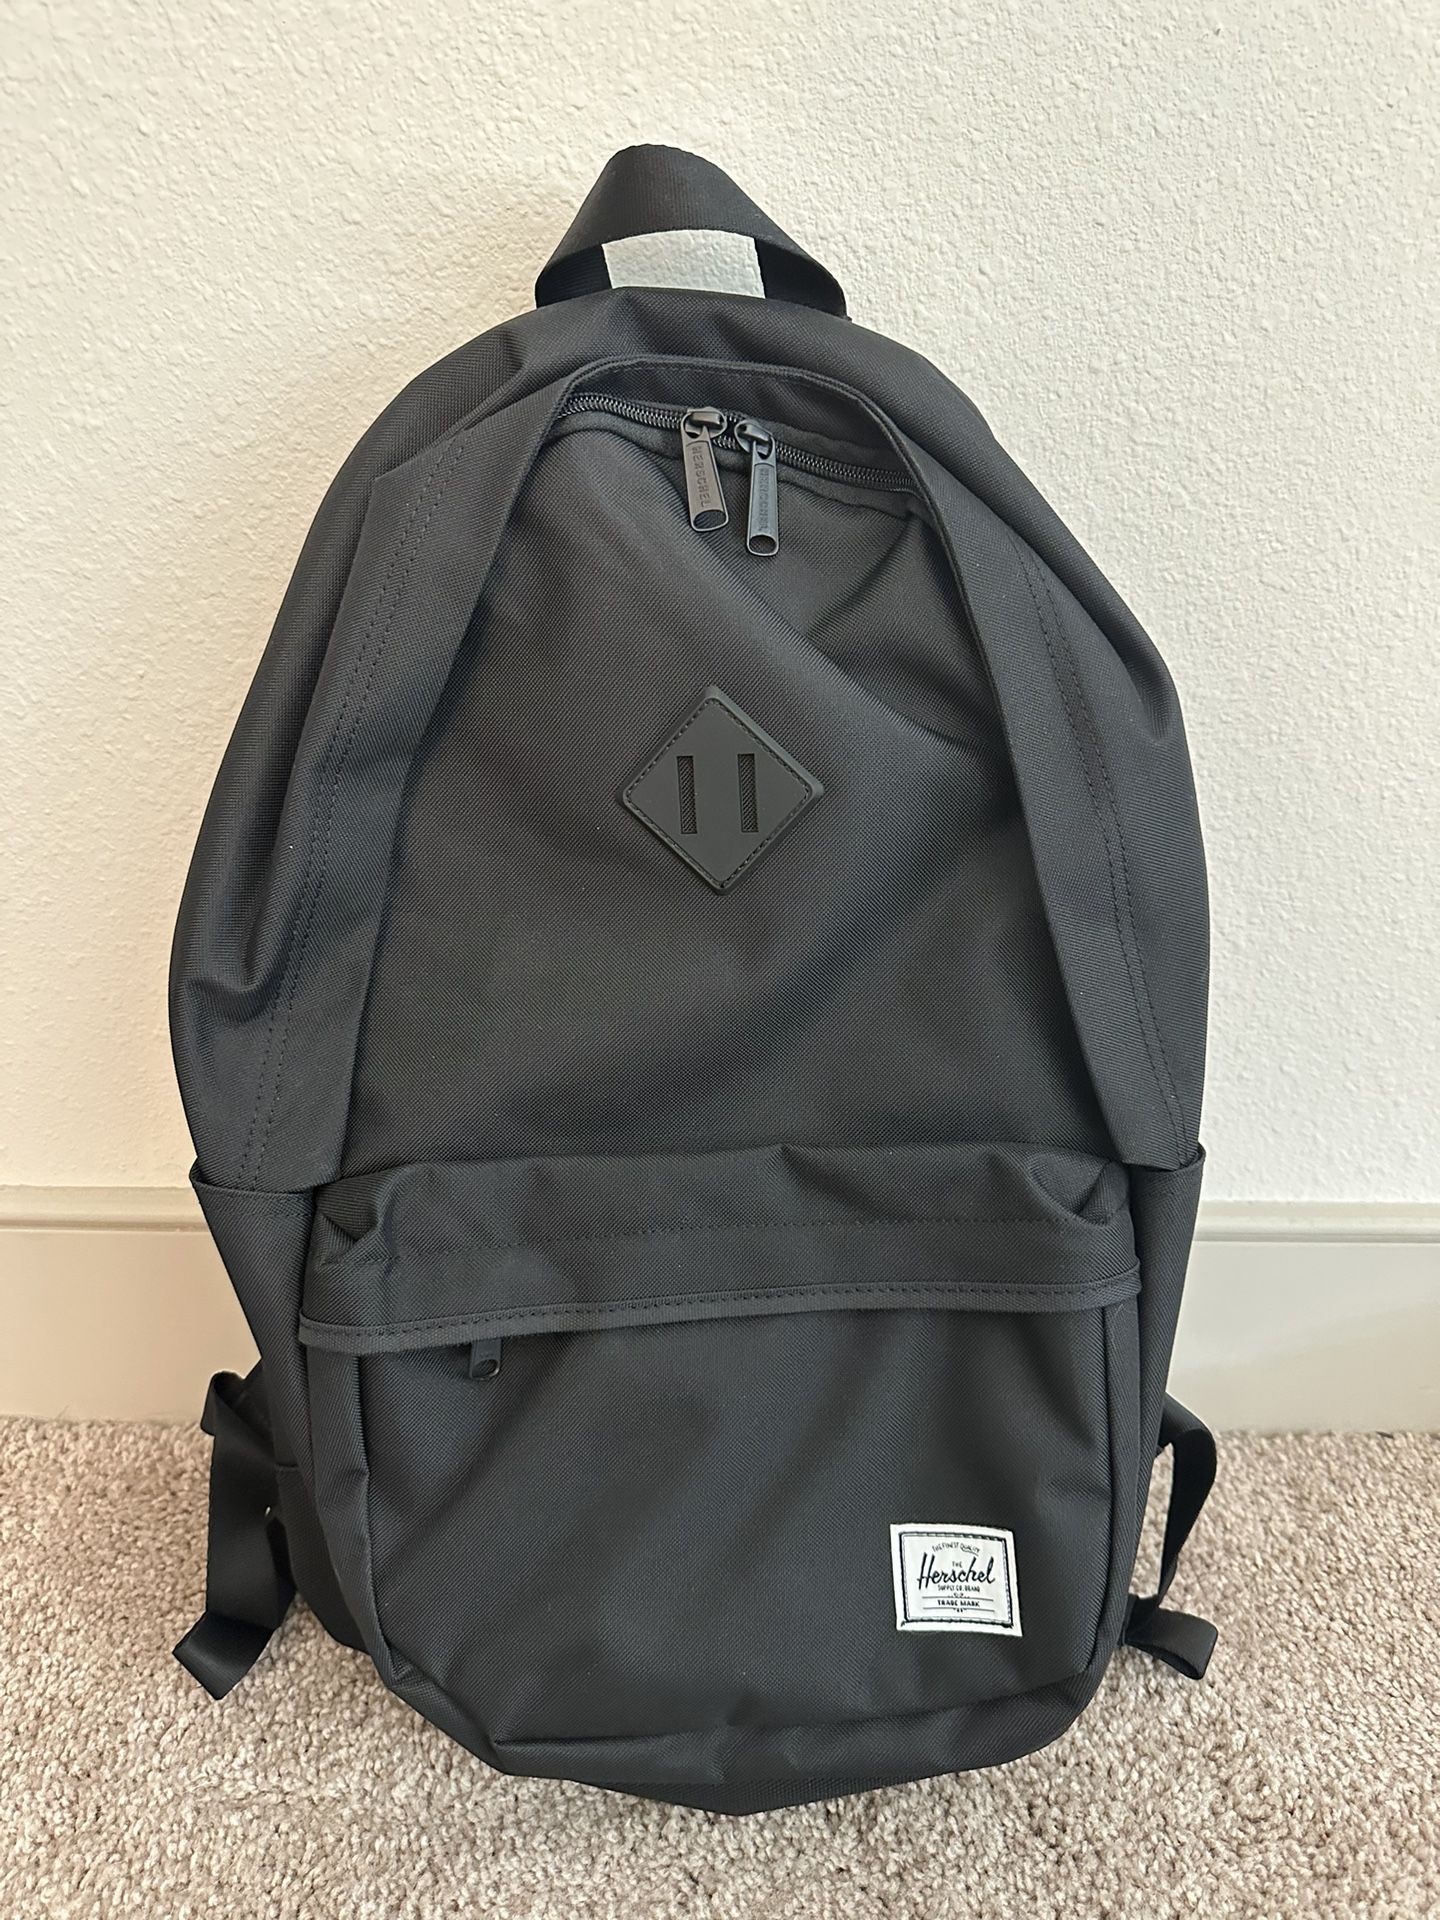 Herschel Heritage Pro Backpack